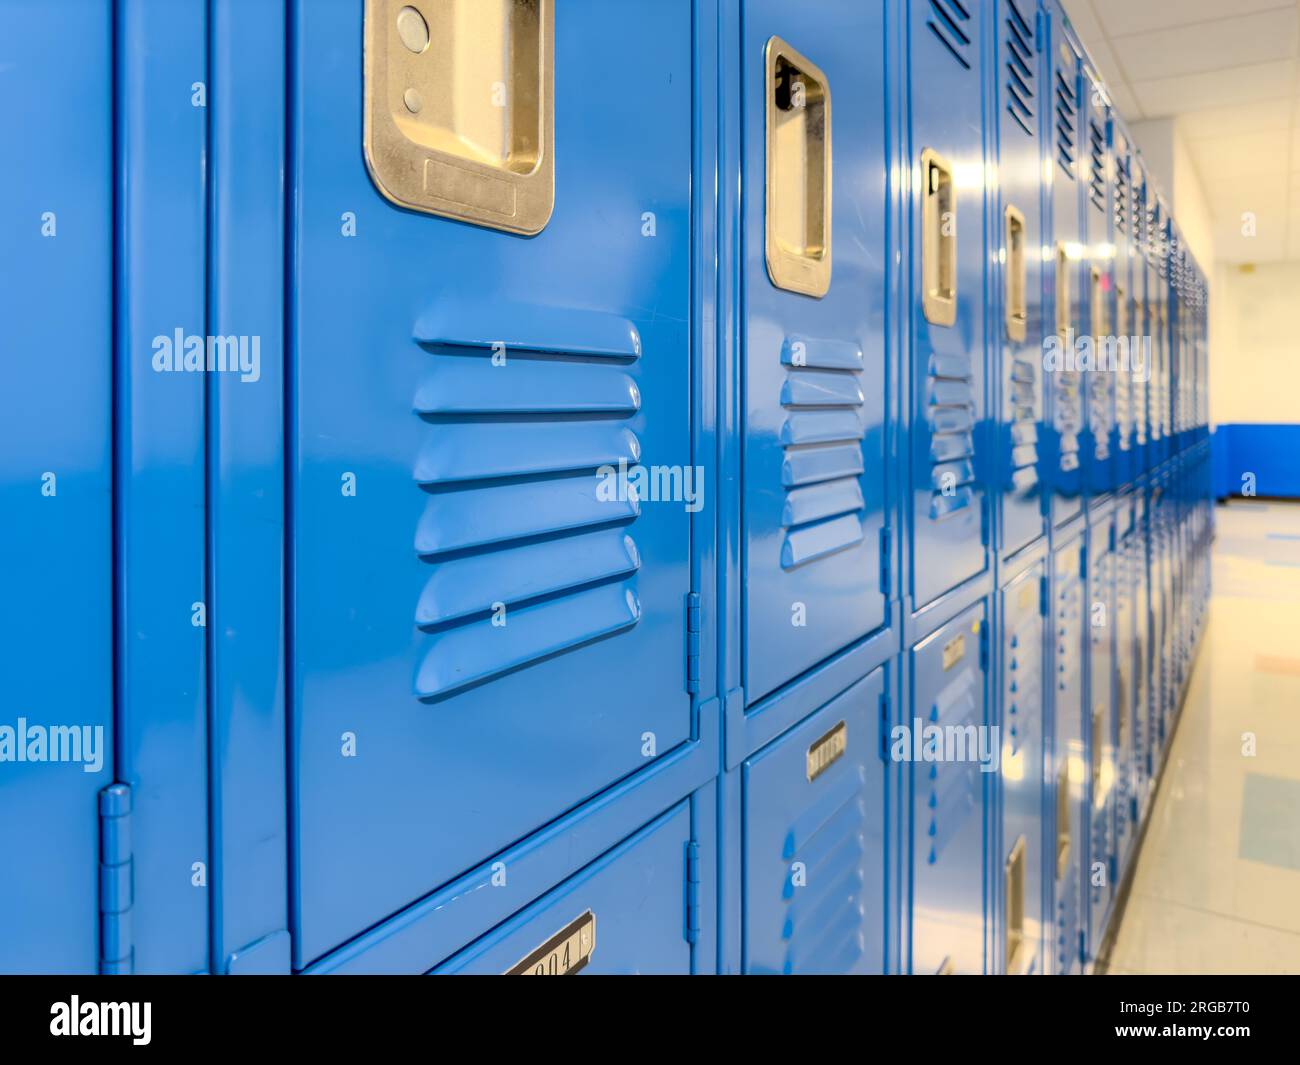 Casilleros de metal azul a lo largo de un pasillo indescriptible en una escuela secundaria típica de EE.UU. No hay información identificable incluida y nadie en el hall. Foto de stock